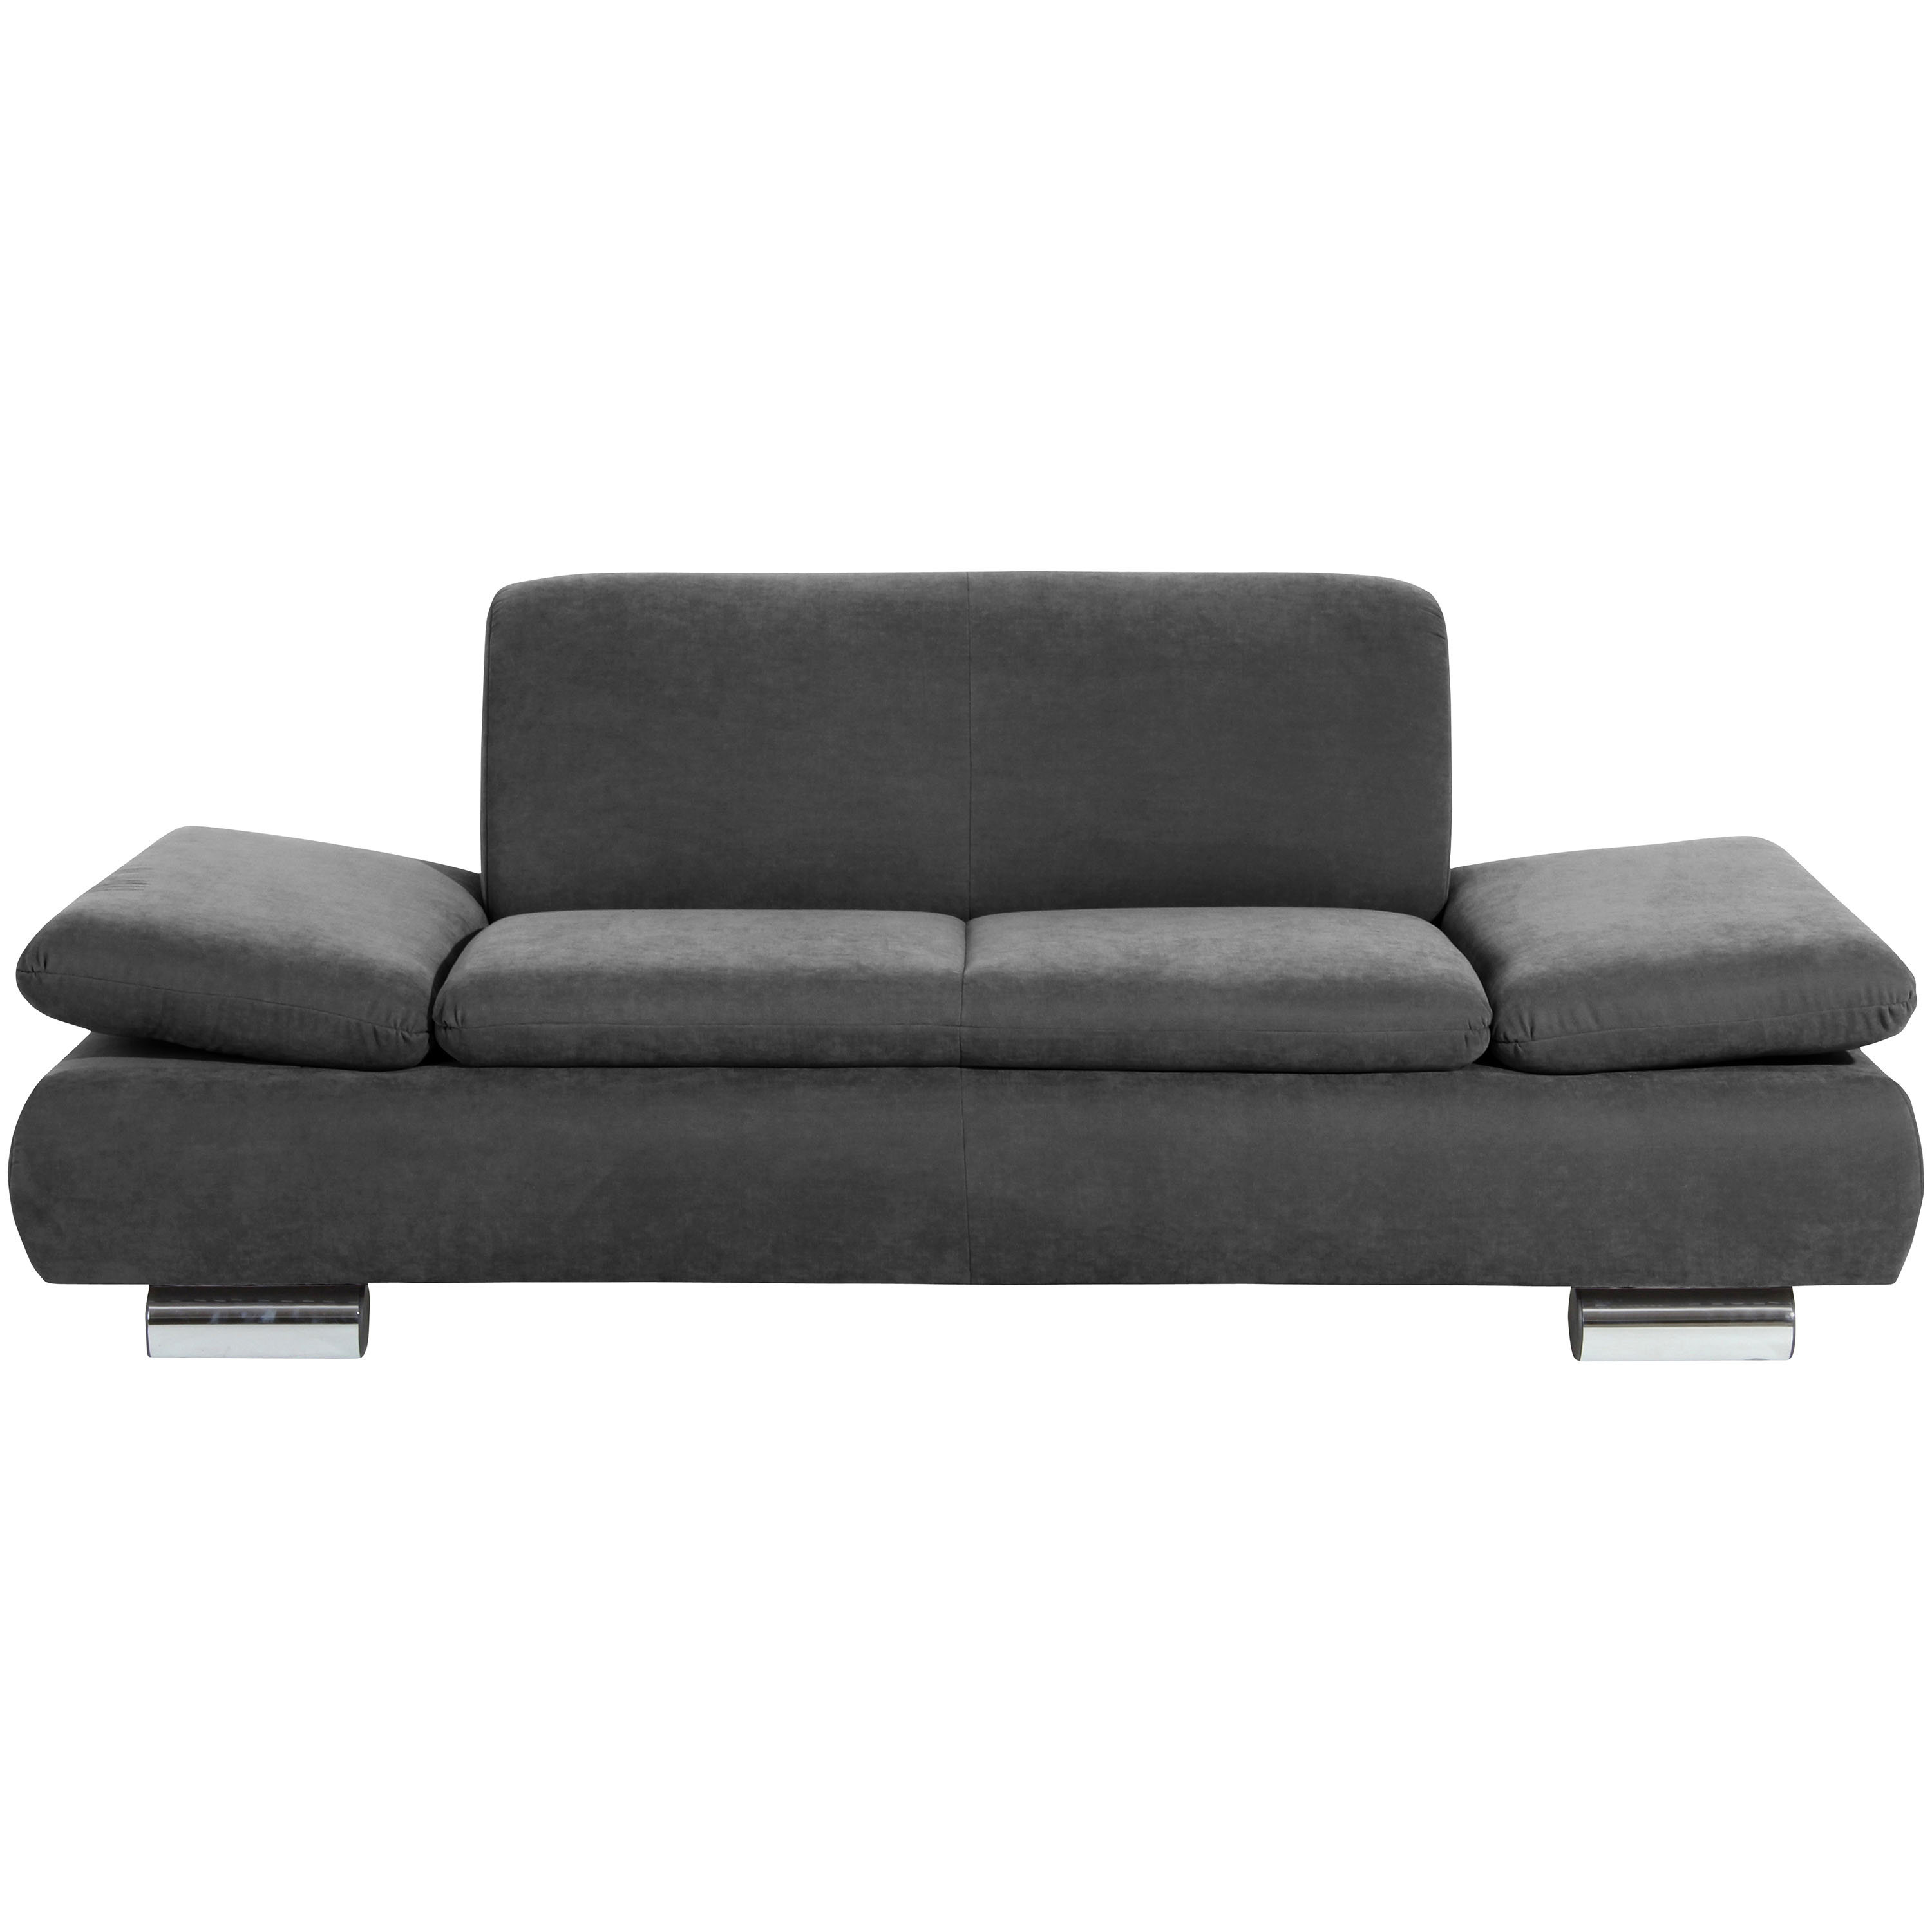 gemütliches 2-sitzer sofa in anthrazit mit verstellbaren armlehnen und verchromten metallfüssen